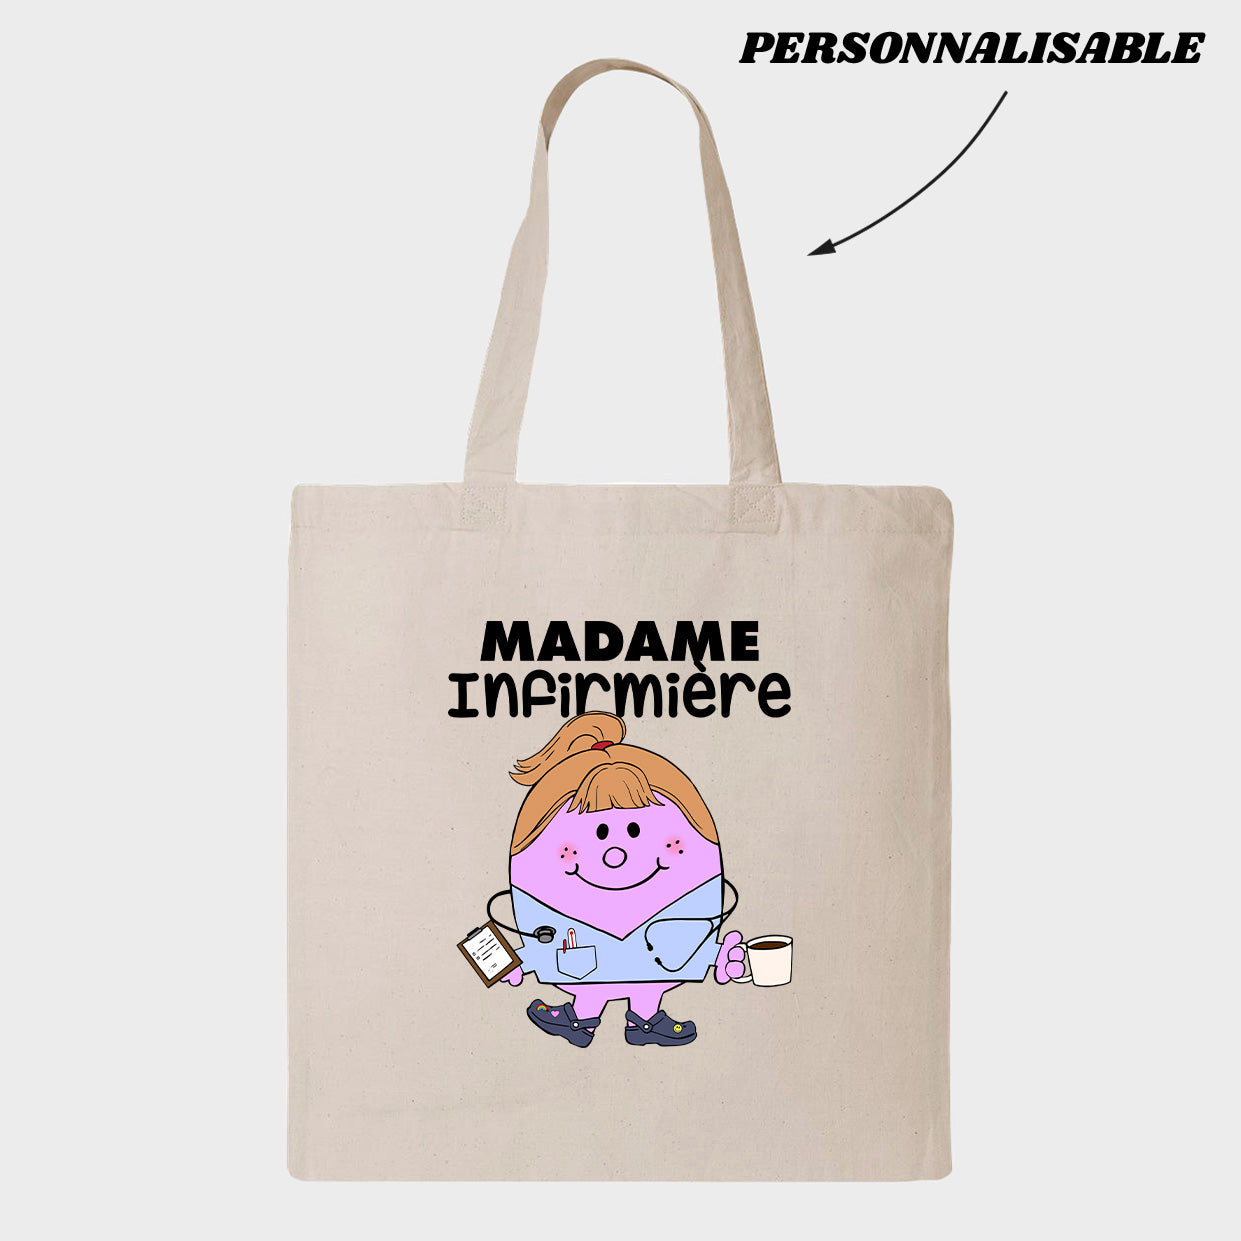 MADAME *PERSONNEL DE LA SANTÉ* tote bag personnalisable - tamelo boutique